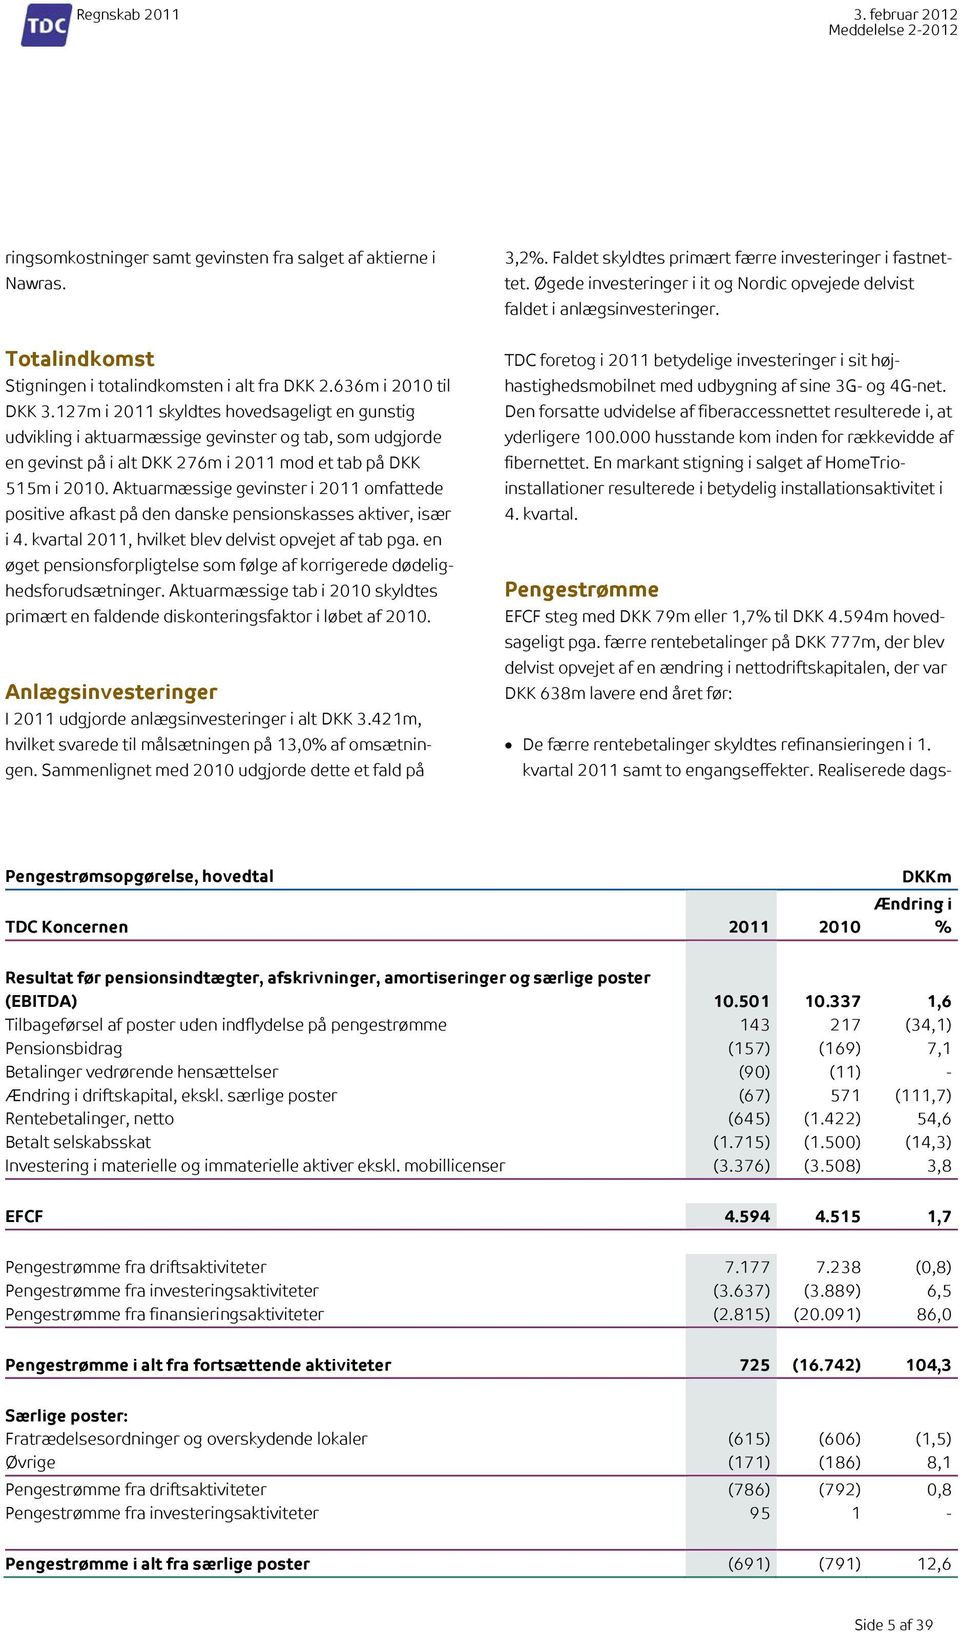 Aktuarmæssige gevinster i 2011 omfattede positive afkast på den danske pensionskasses aktiver, især i 4. kvartal 2011, hvilket blev delvist opvejet af tab pga.